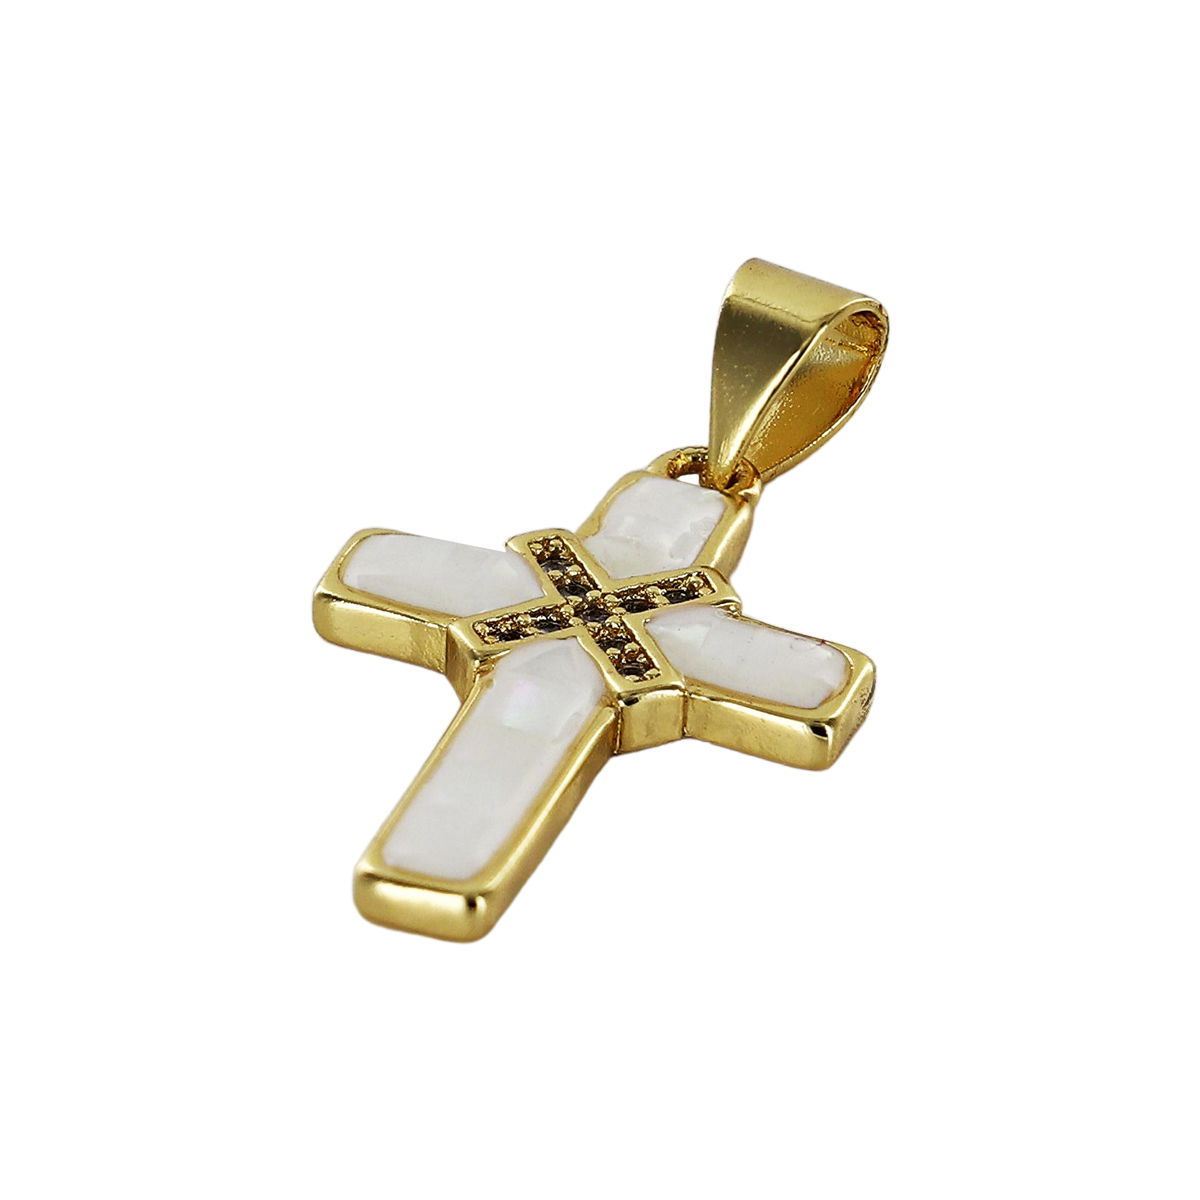 Croix de cou en nacre avec zirconium sertie sur métal couleur dorée H. 2 cm.